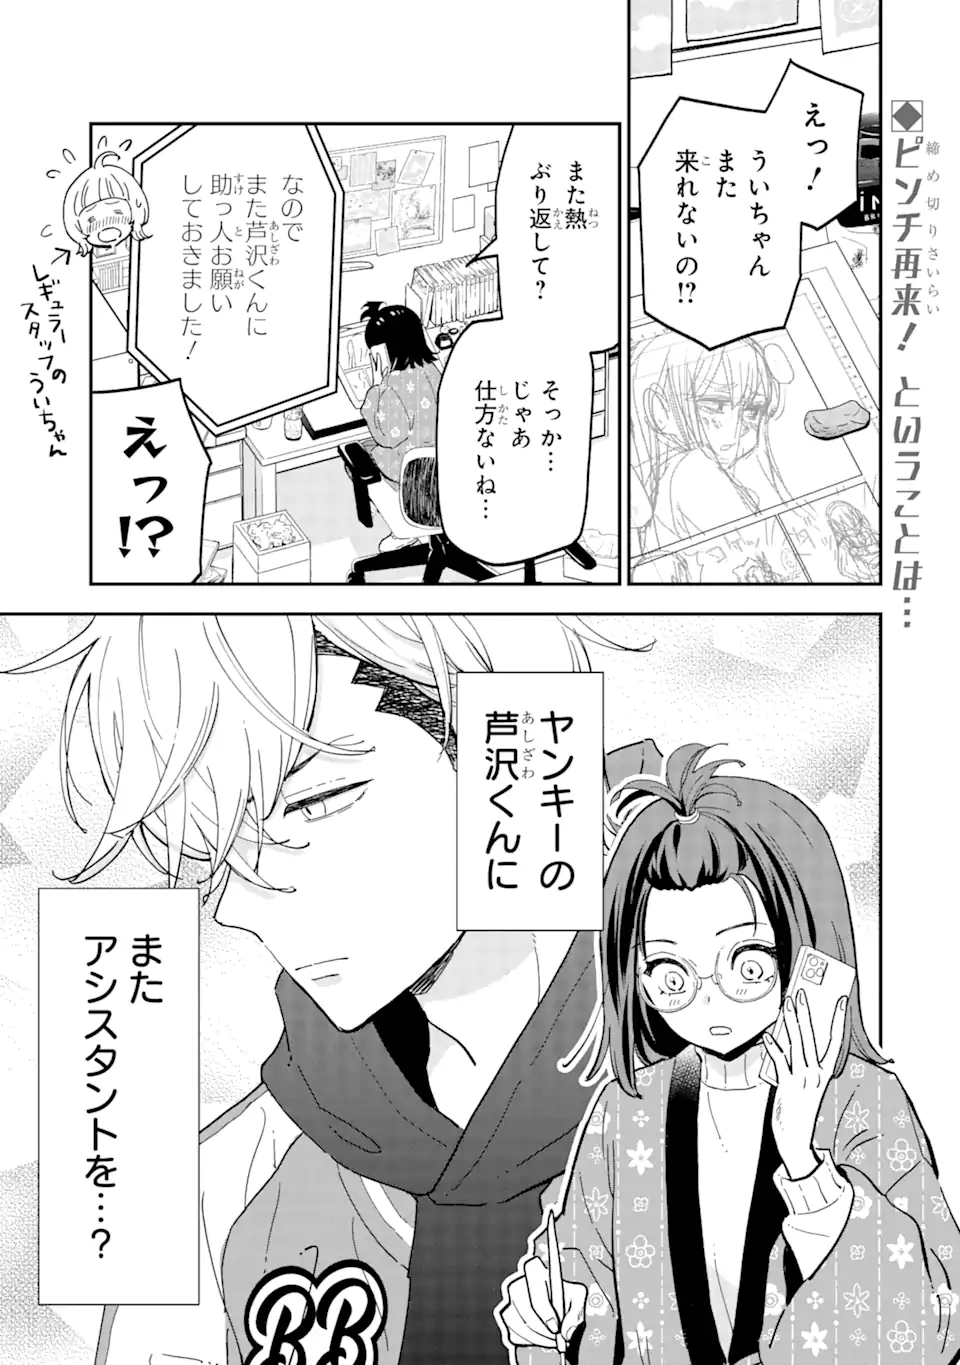 Yankee Assistant no Ashizawa-kun ni Koi wo shita - Chapter 2.1 - Page 1